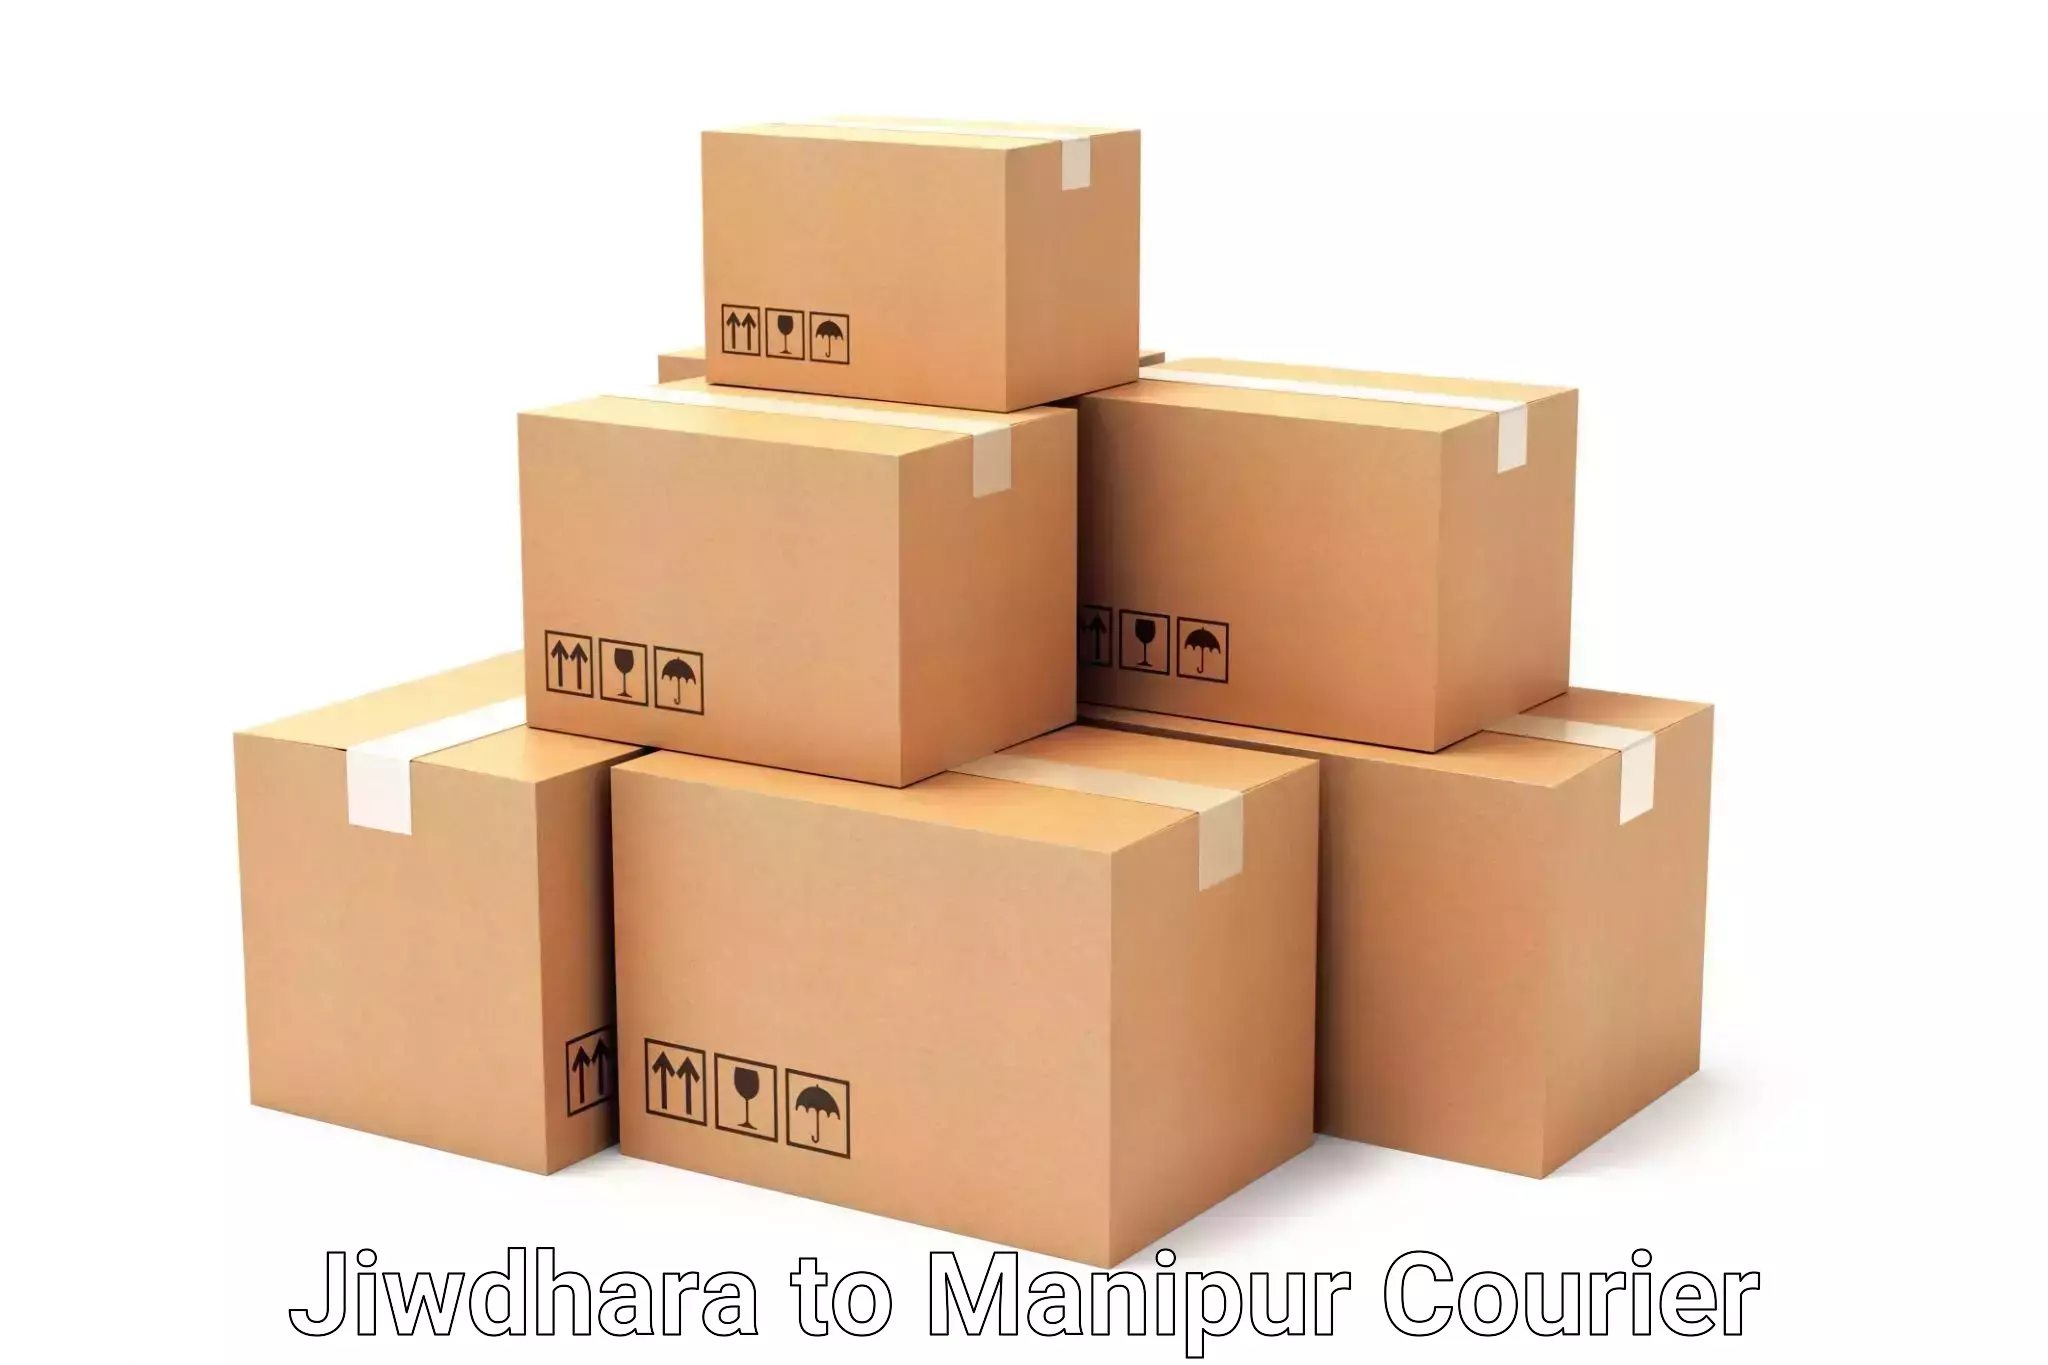 Comprehensive baggage courier Jiwdhara to Moirang